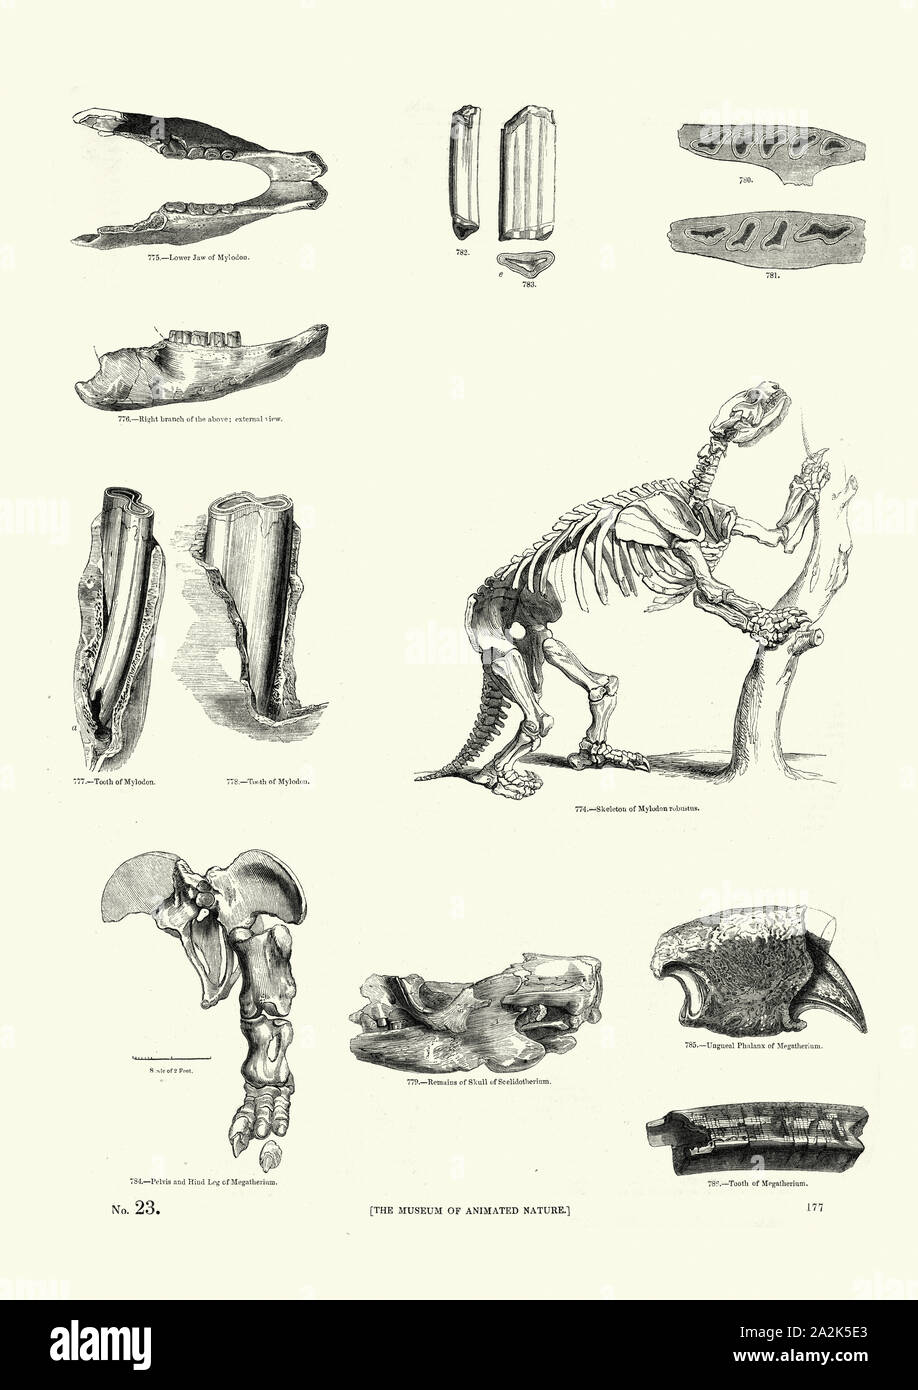 Y los huesos del esqueleto de Glossotherium, Mylodon robustus un género de Ground Sloth. (Plioceno tardío Holoceno Temprano) Foto de stock